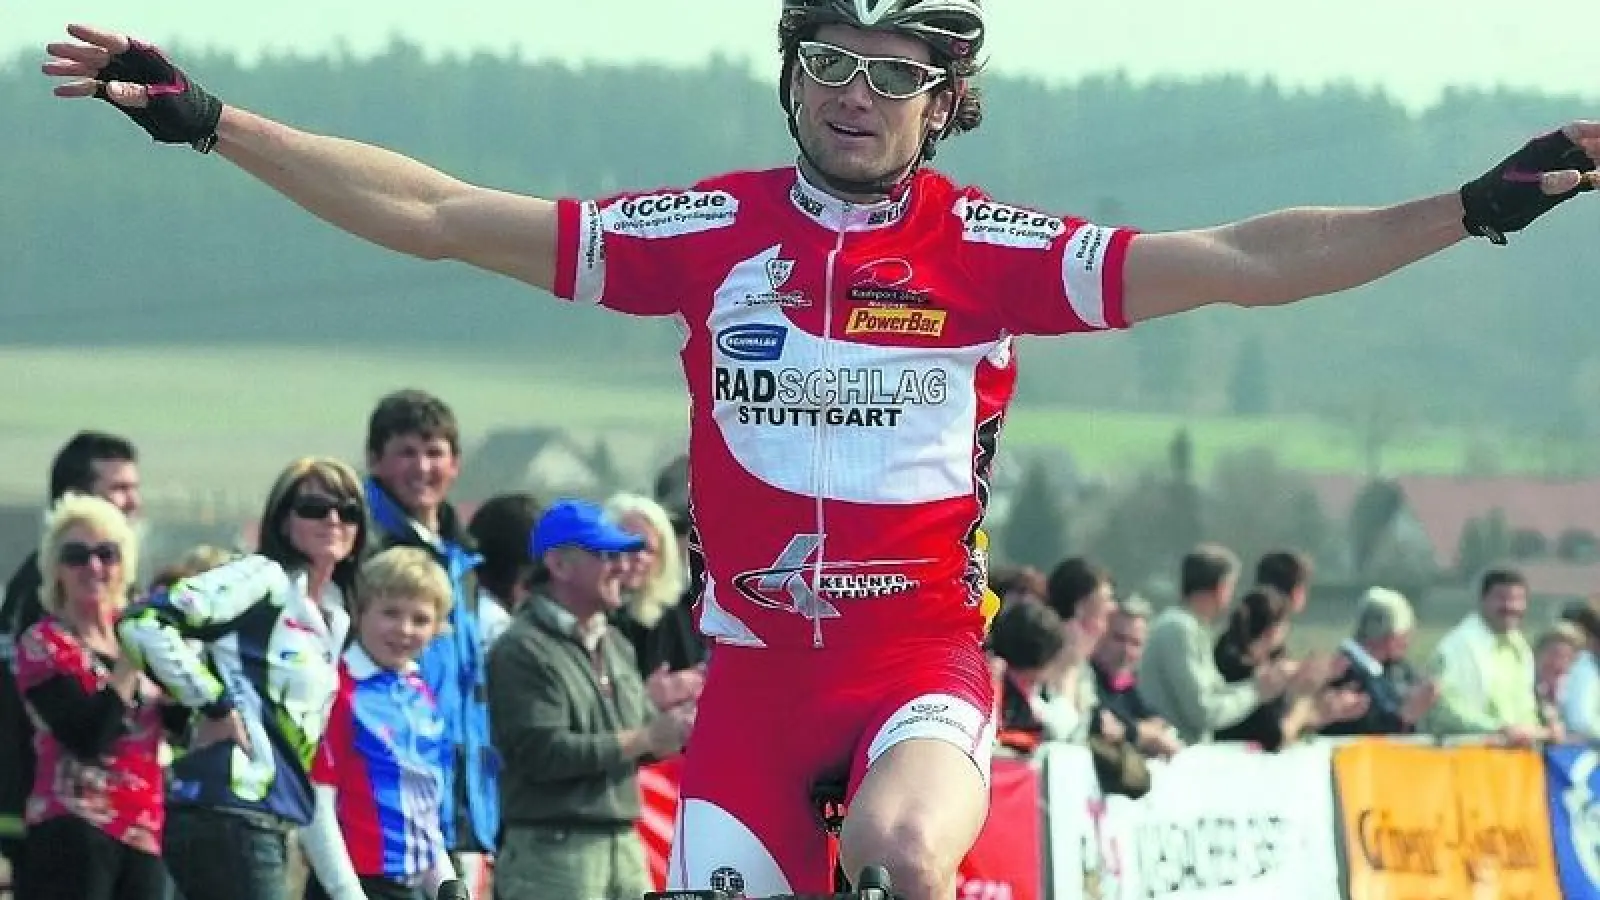 &lt;p&gt; &lt;x_bildunterschr&gt; &lt;b&gt;Erik Hoffmann &lt;/b&gt; fuhr als Erster über die Ziellinie. Der in der namibischen Hauptstadt Windhoek geborene Radfahrer, der 2008 für das südwestafrikanische Land bei den Olympischen Spielen in Peking startete, gewann mit deutlichem Vorsprung den Aichacher Frühjahrsstraßenpreis. &lt;tab/&gt;Fotos: Baur &lt;/x_bildunterschr&gt; &lt;/p&gt;